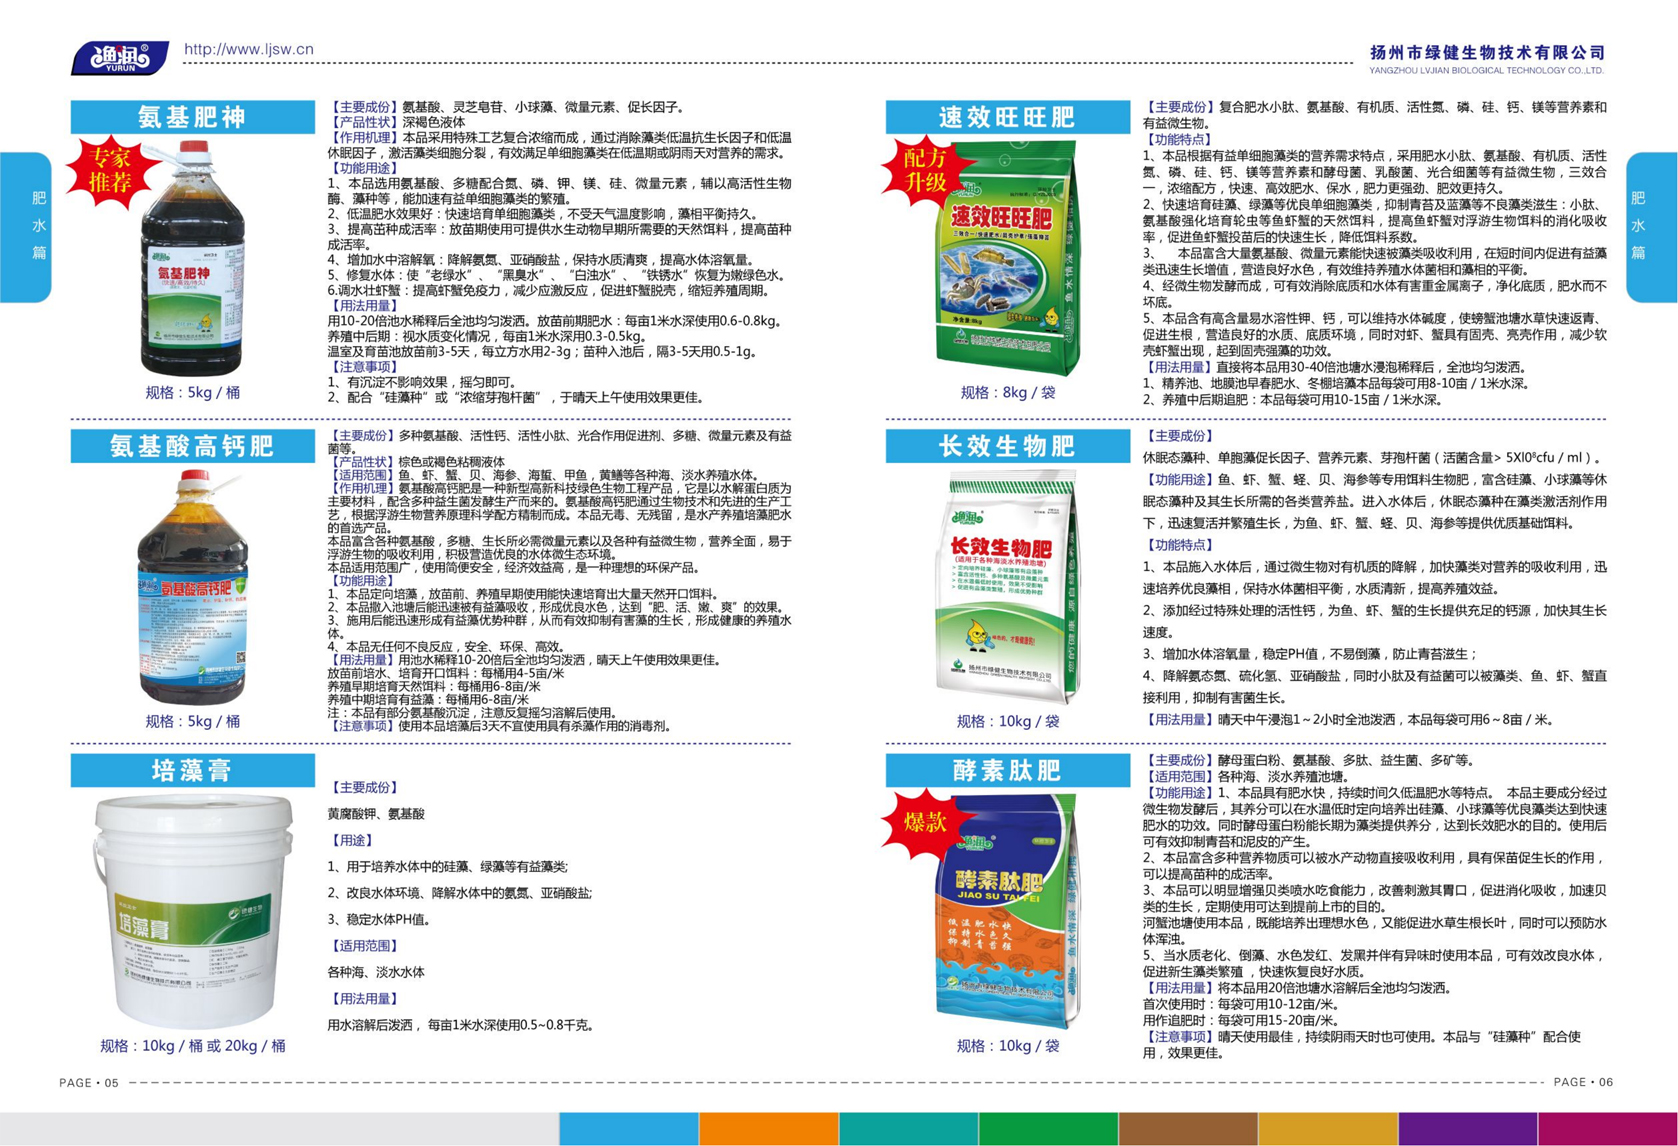 揚州市綠健生物技術有限公司第6版產品手冊_04